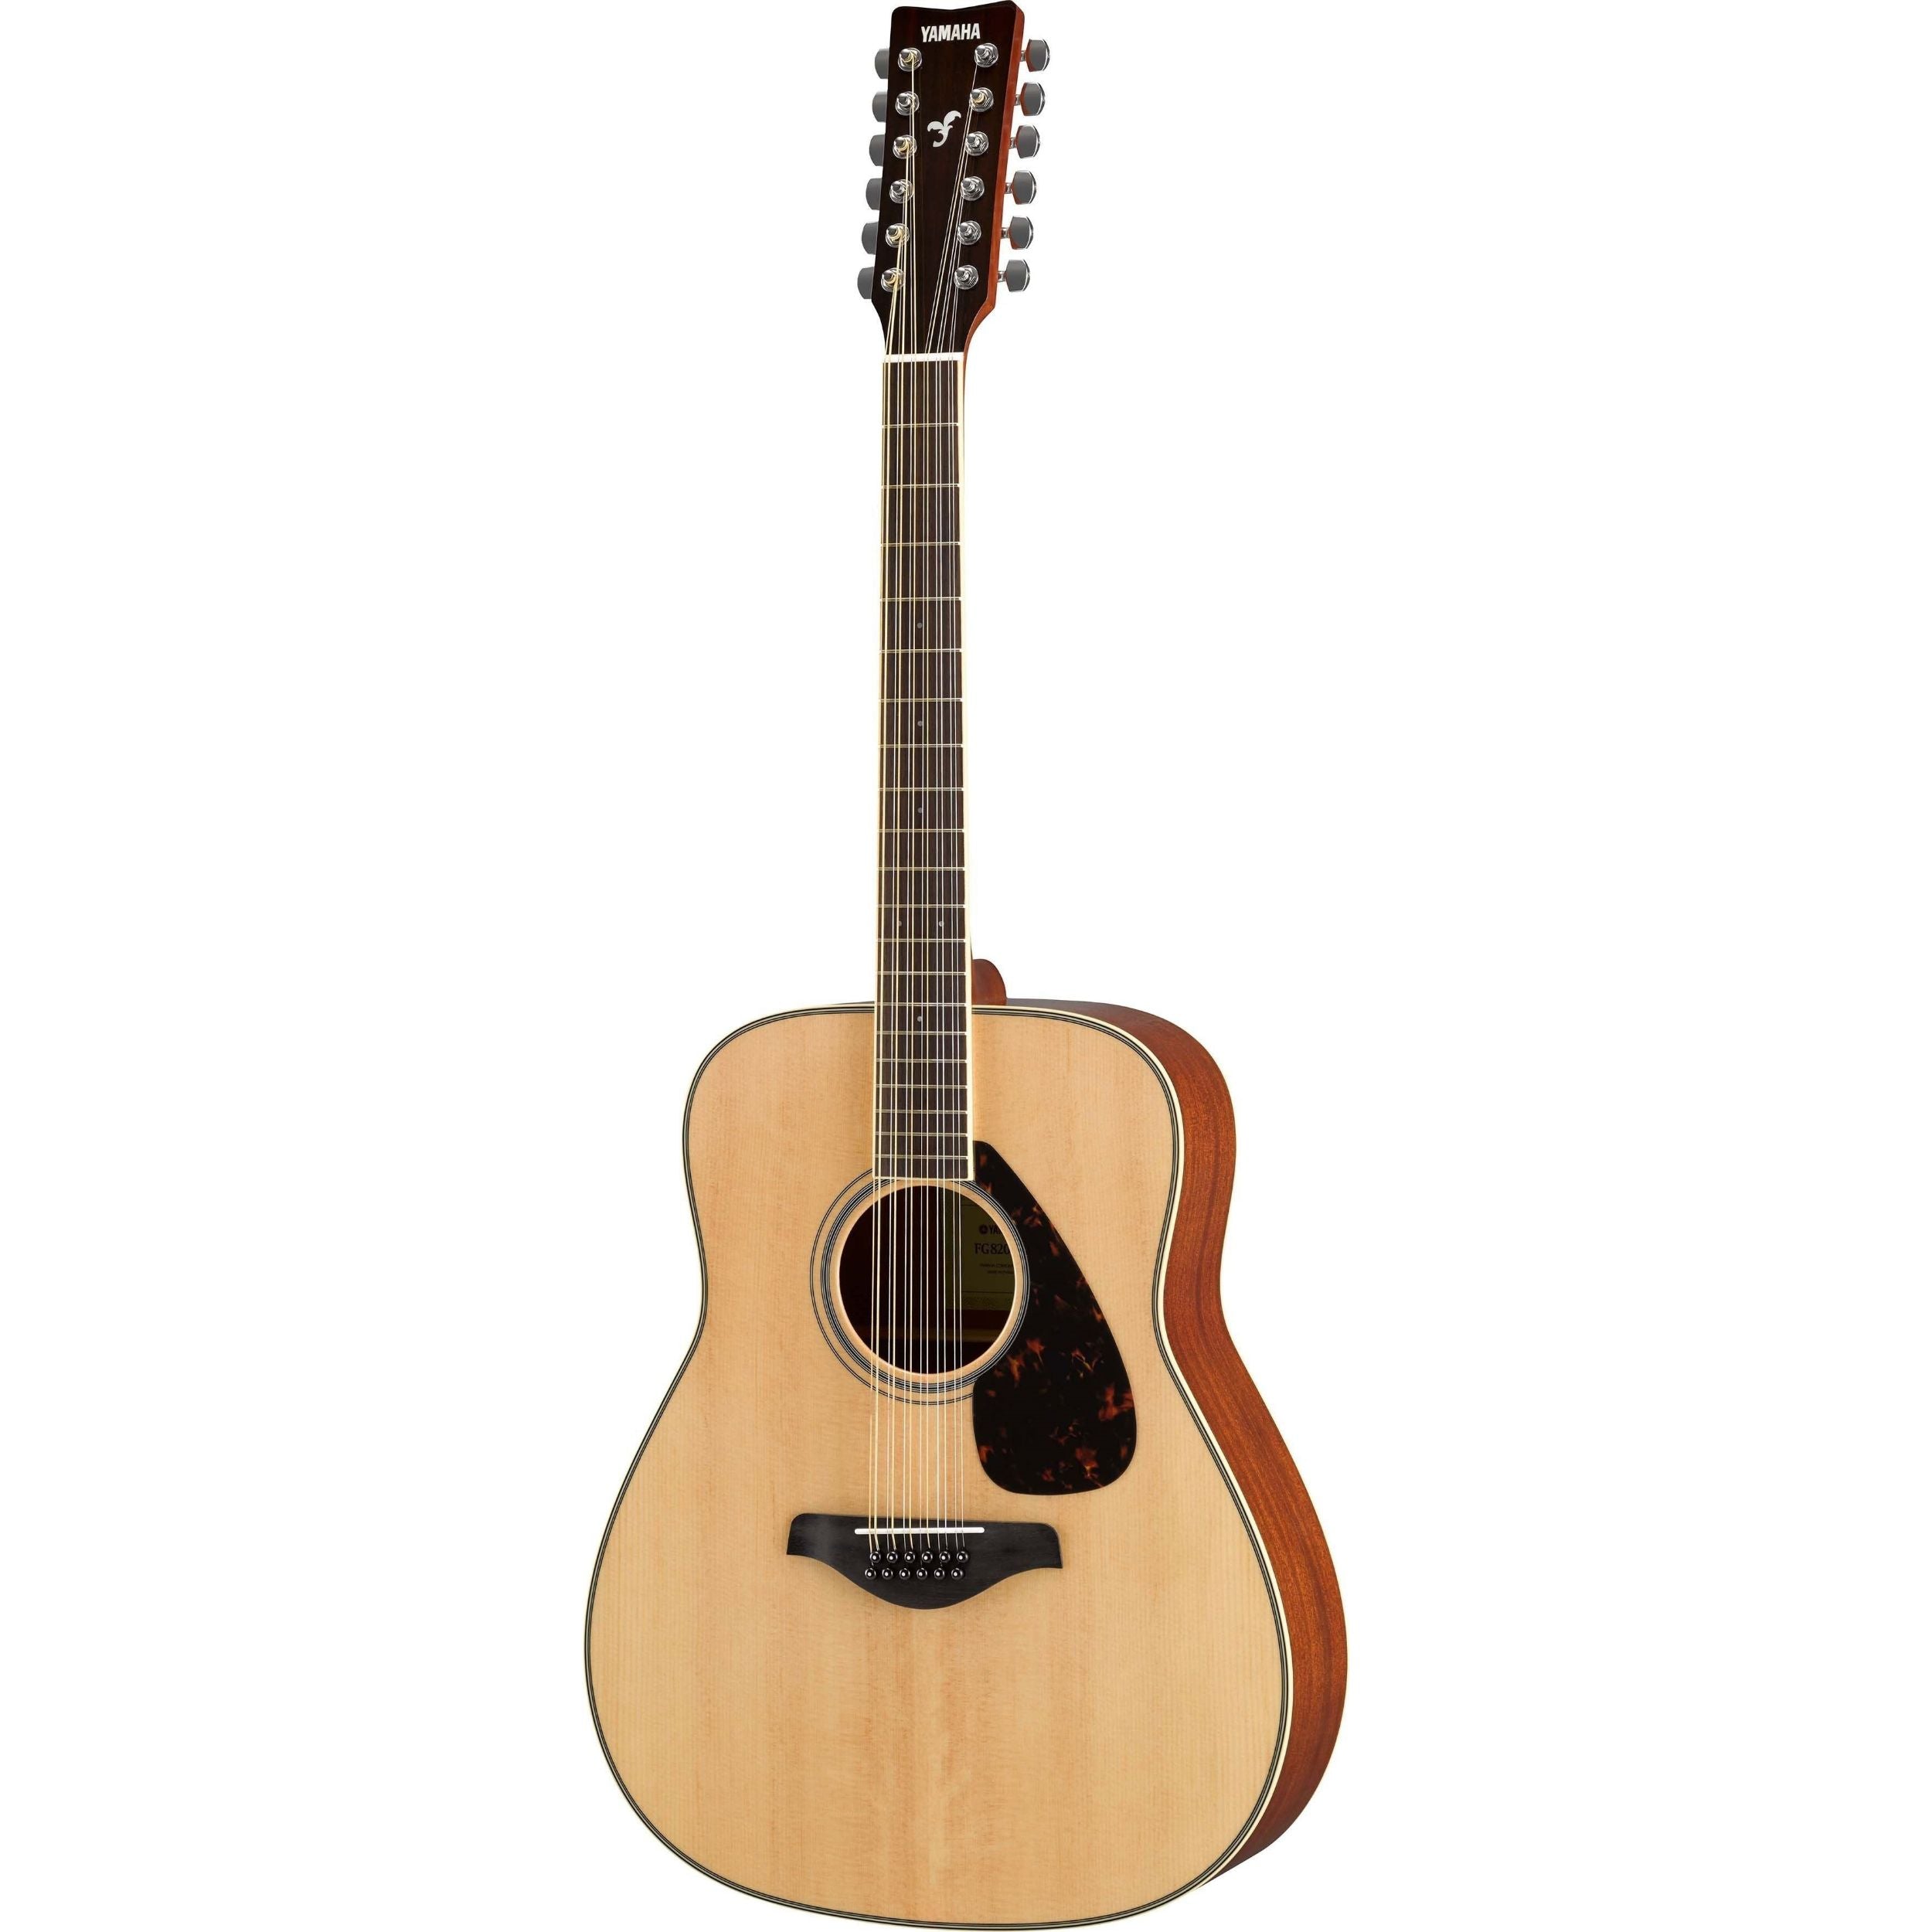 Yamaha FG820-12 12-String Acoustic Folk Guitar